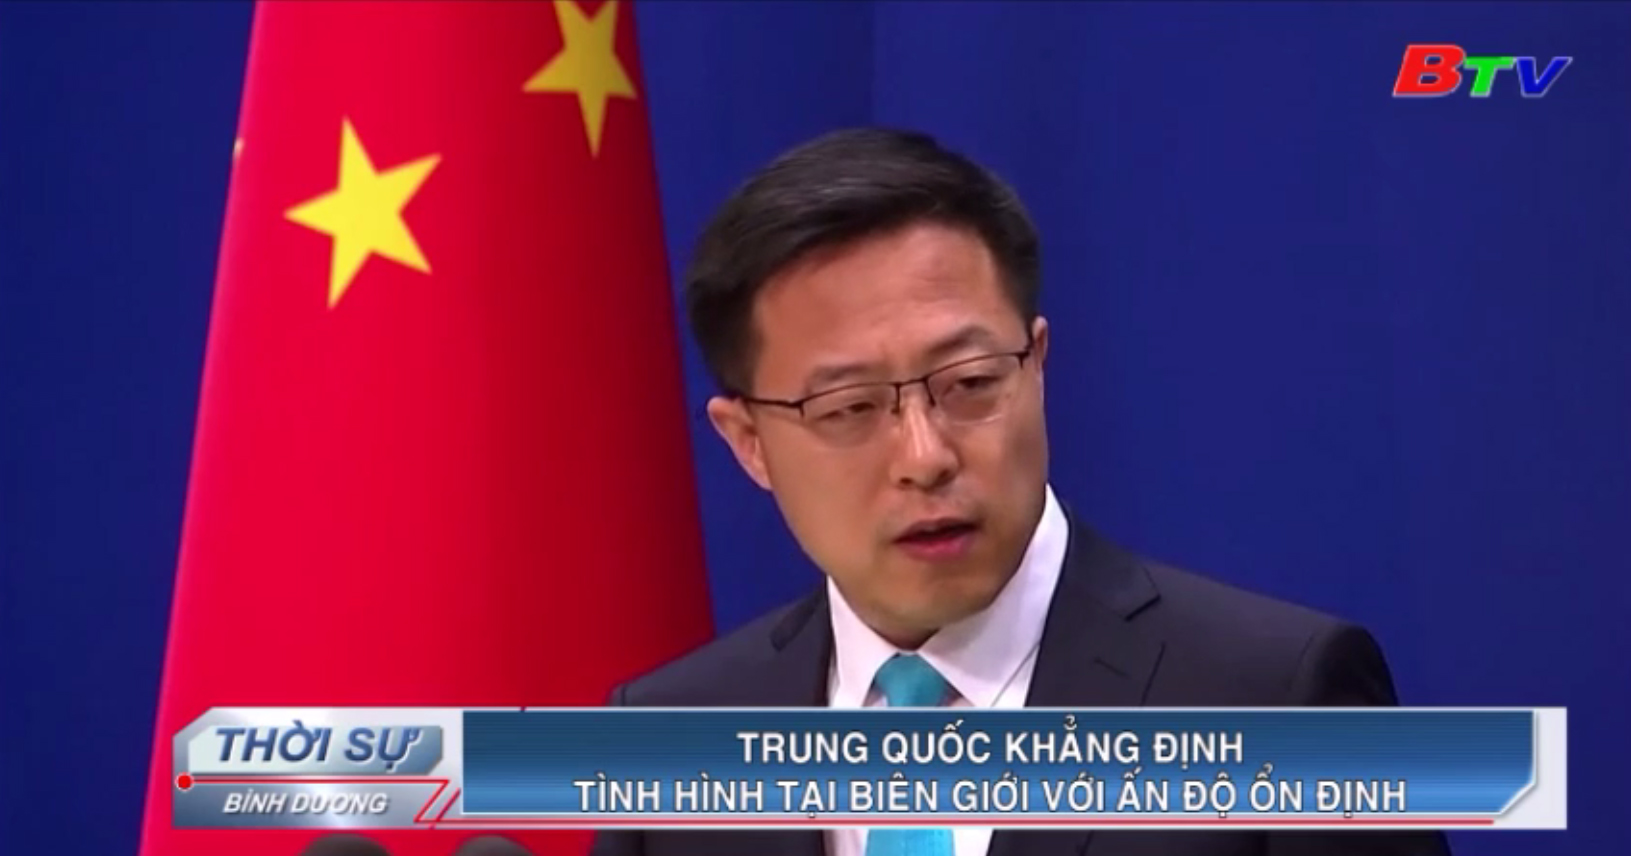 Trung Quốc khẳng định tình hình tại biên giới với Ấn Độ ổn định